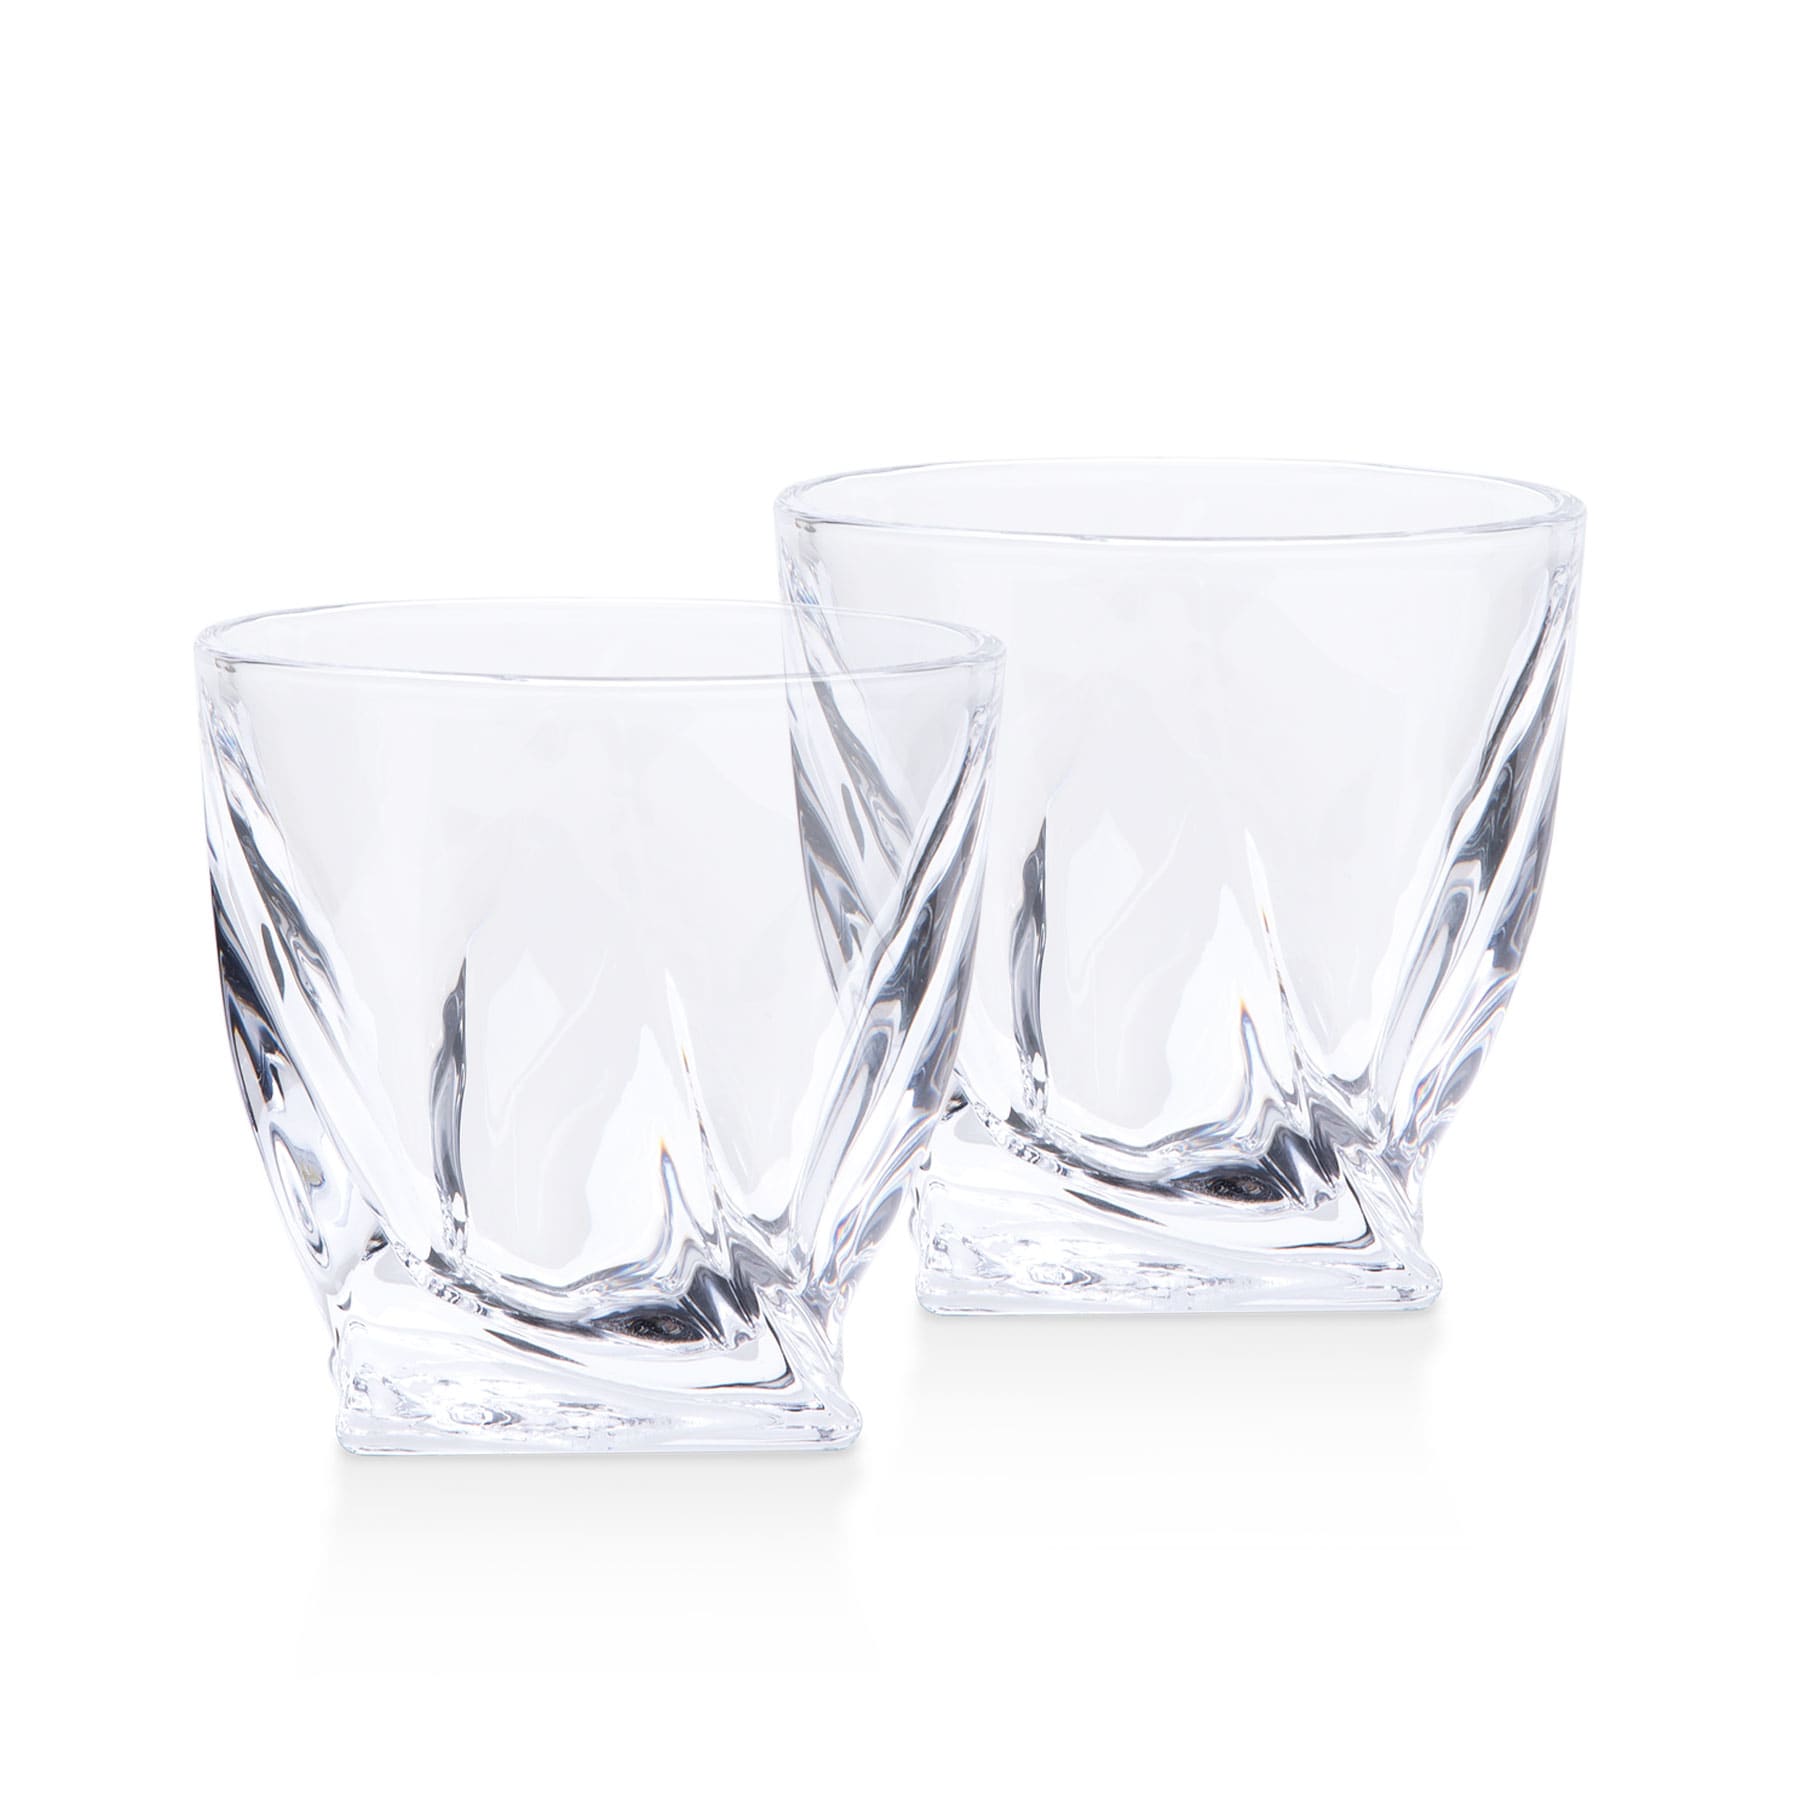 pohwgs_highland_whisky_glass_set_300ml_glasses-3.jpg